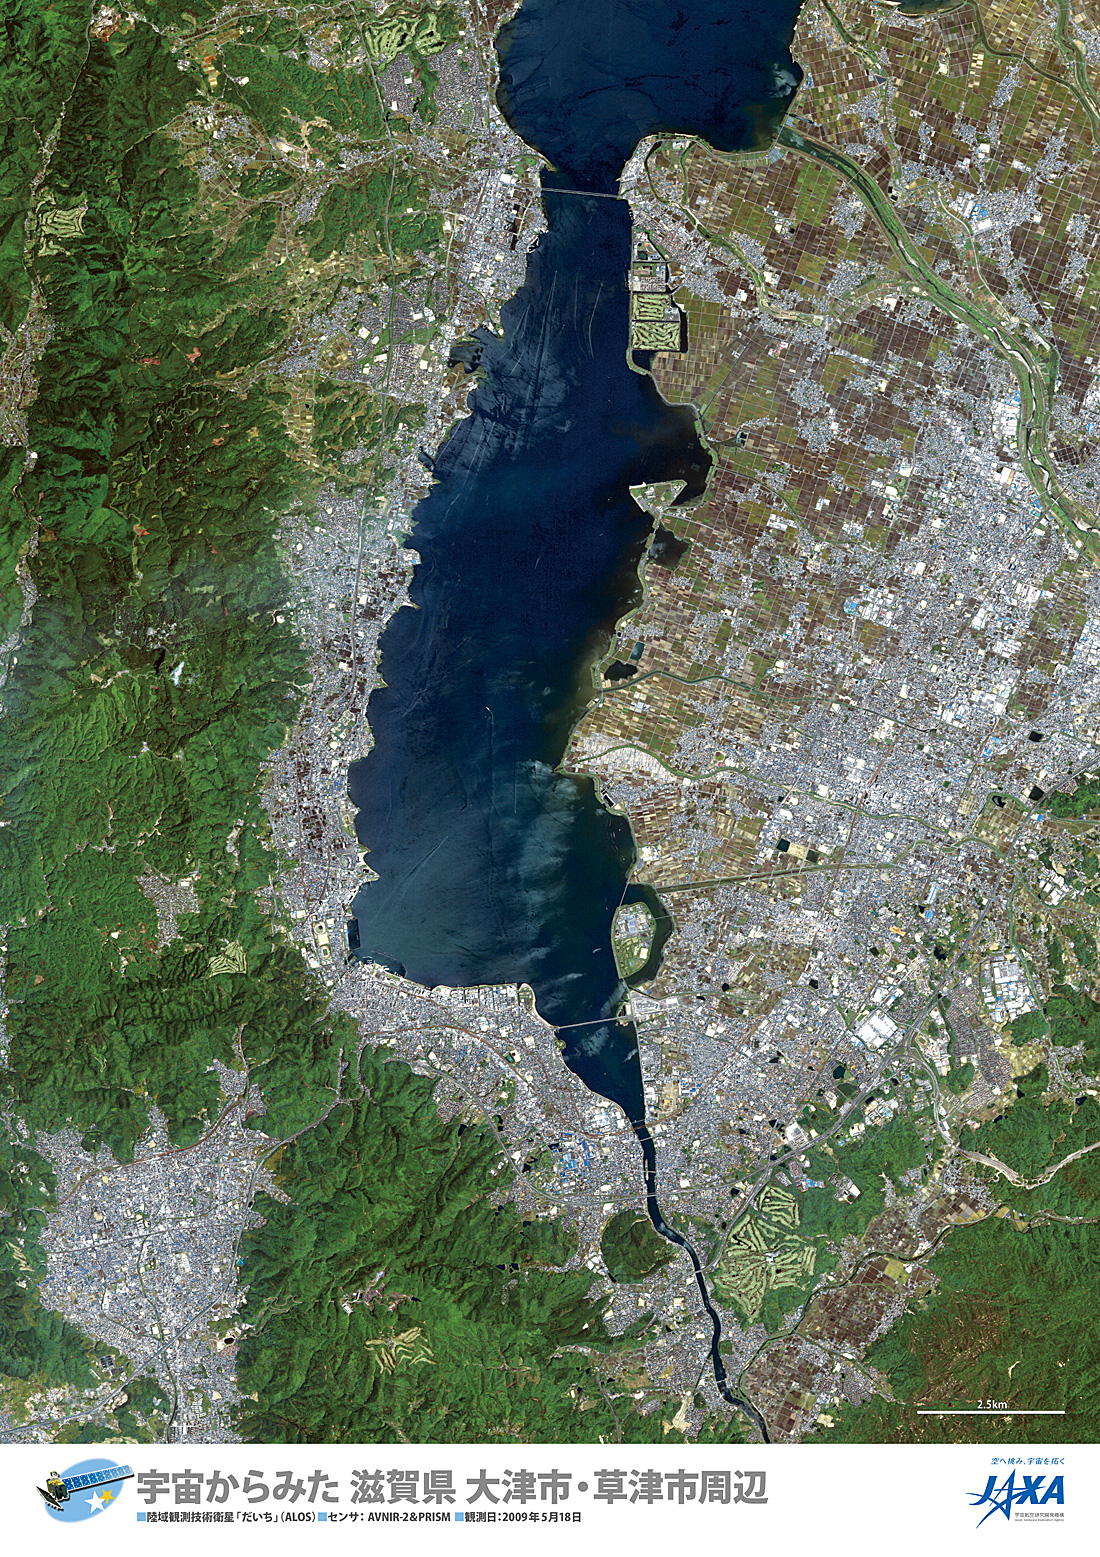 だいちから見た日本の都市 大津市・草津市周辺:衛星画像（ポスター仕上げ）